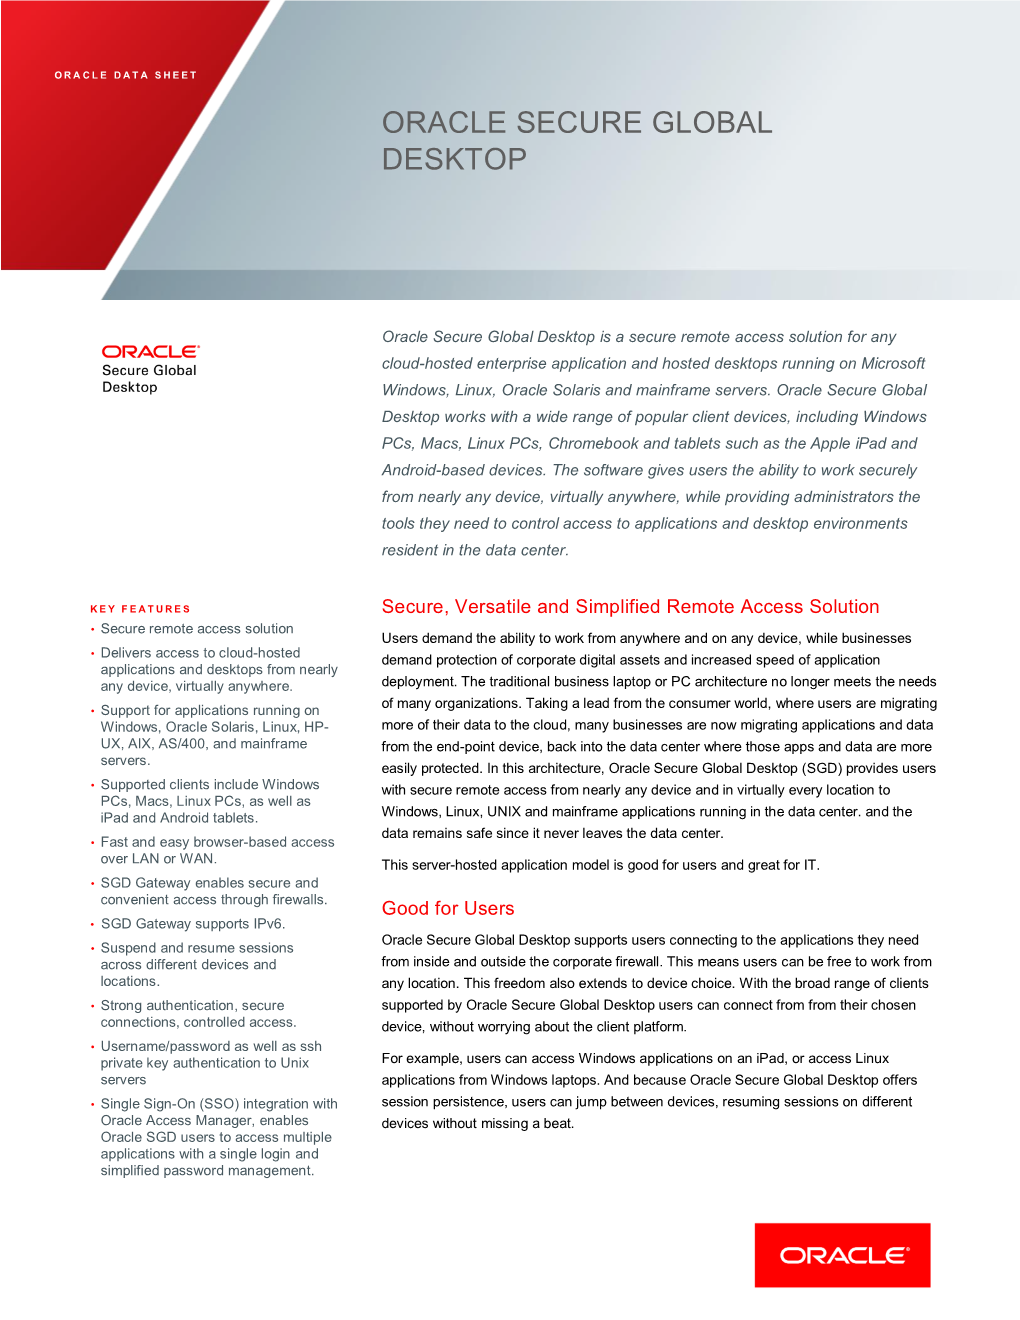 Oracle Secure Global Desktop